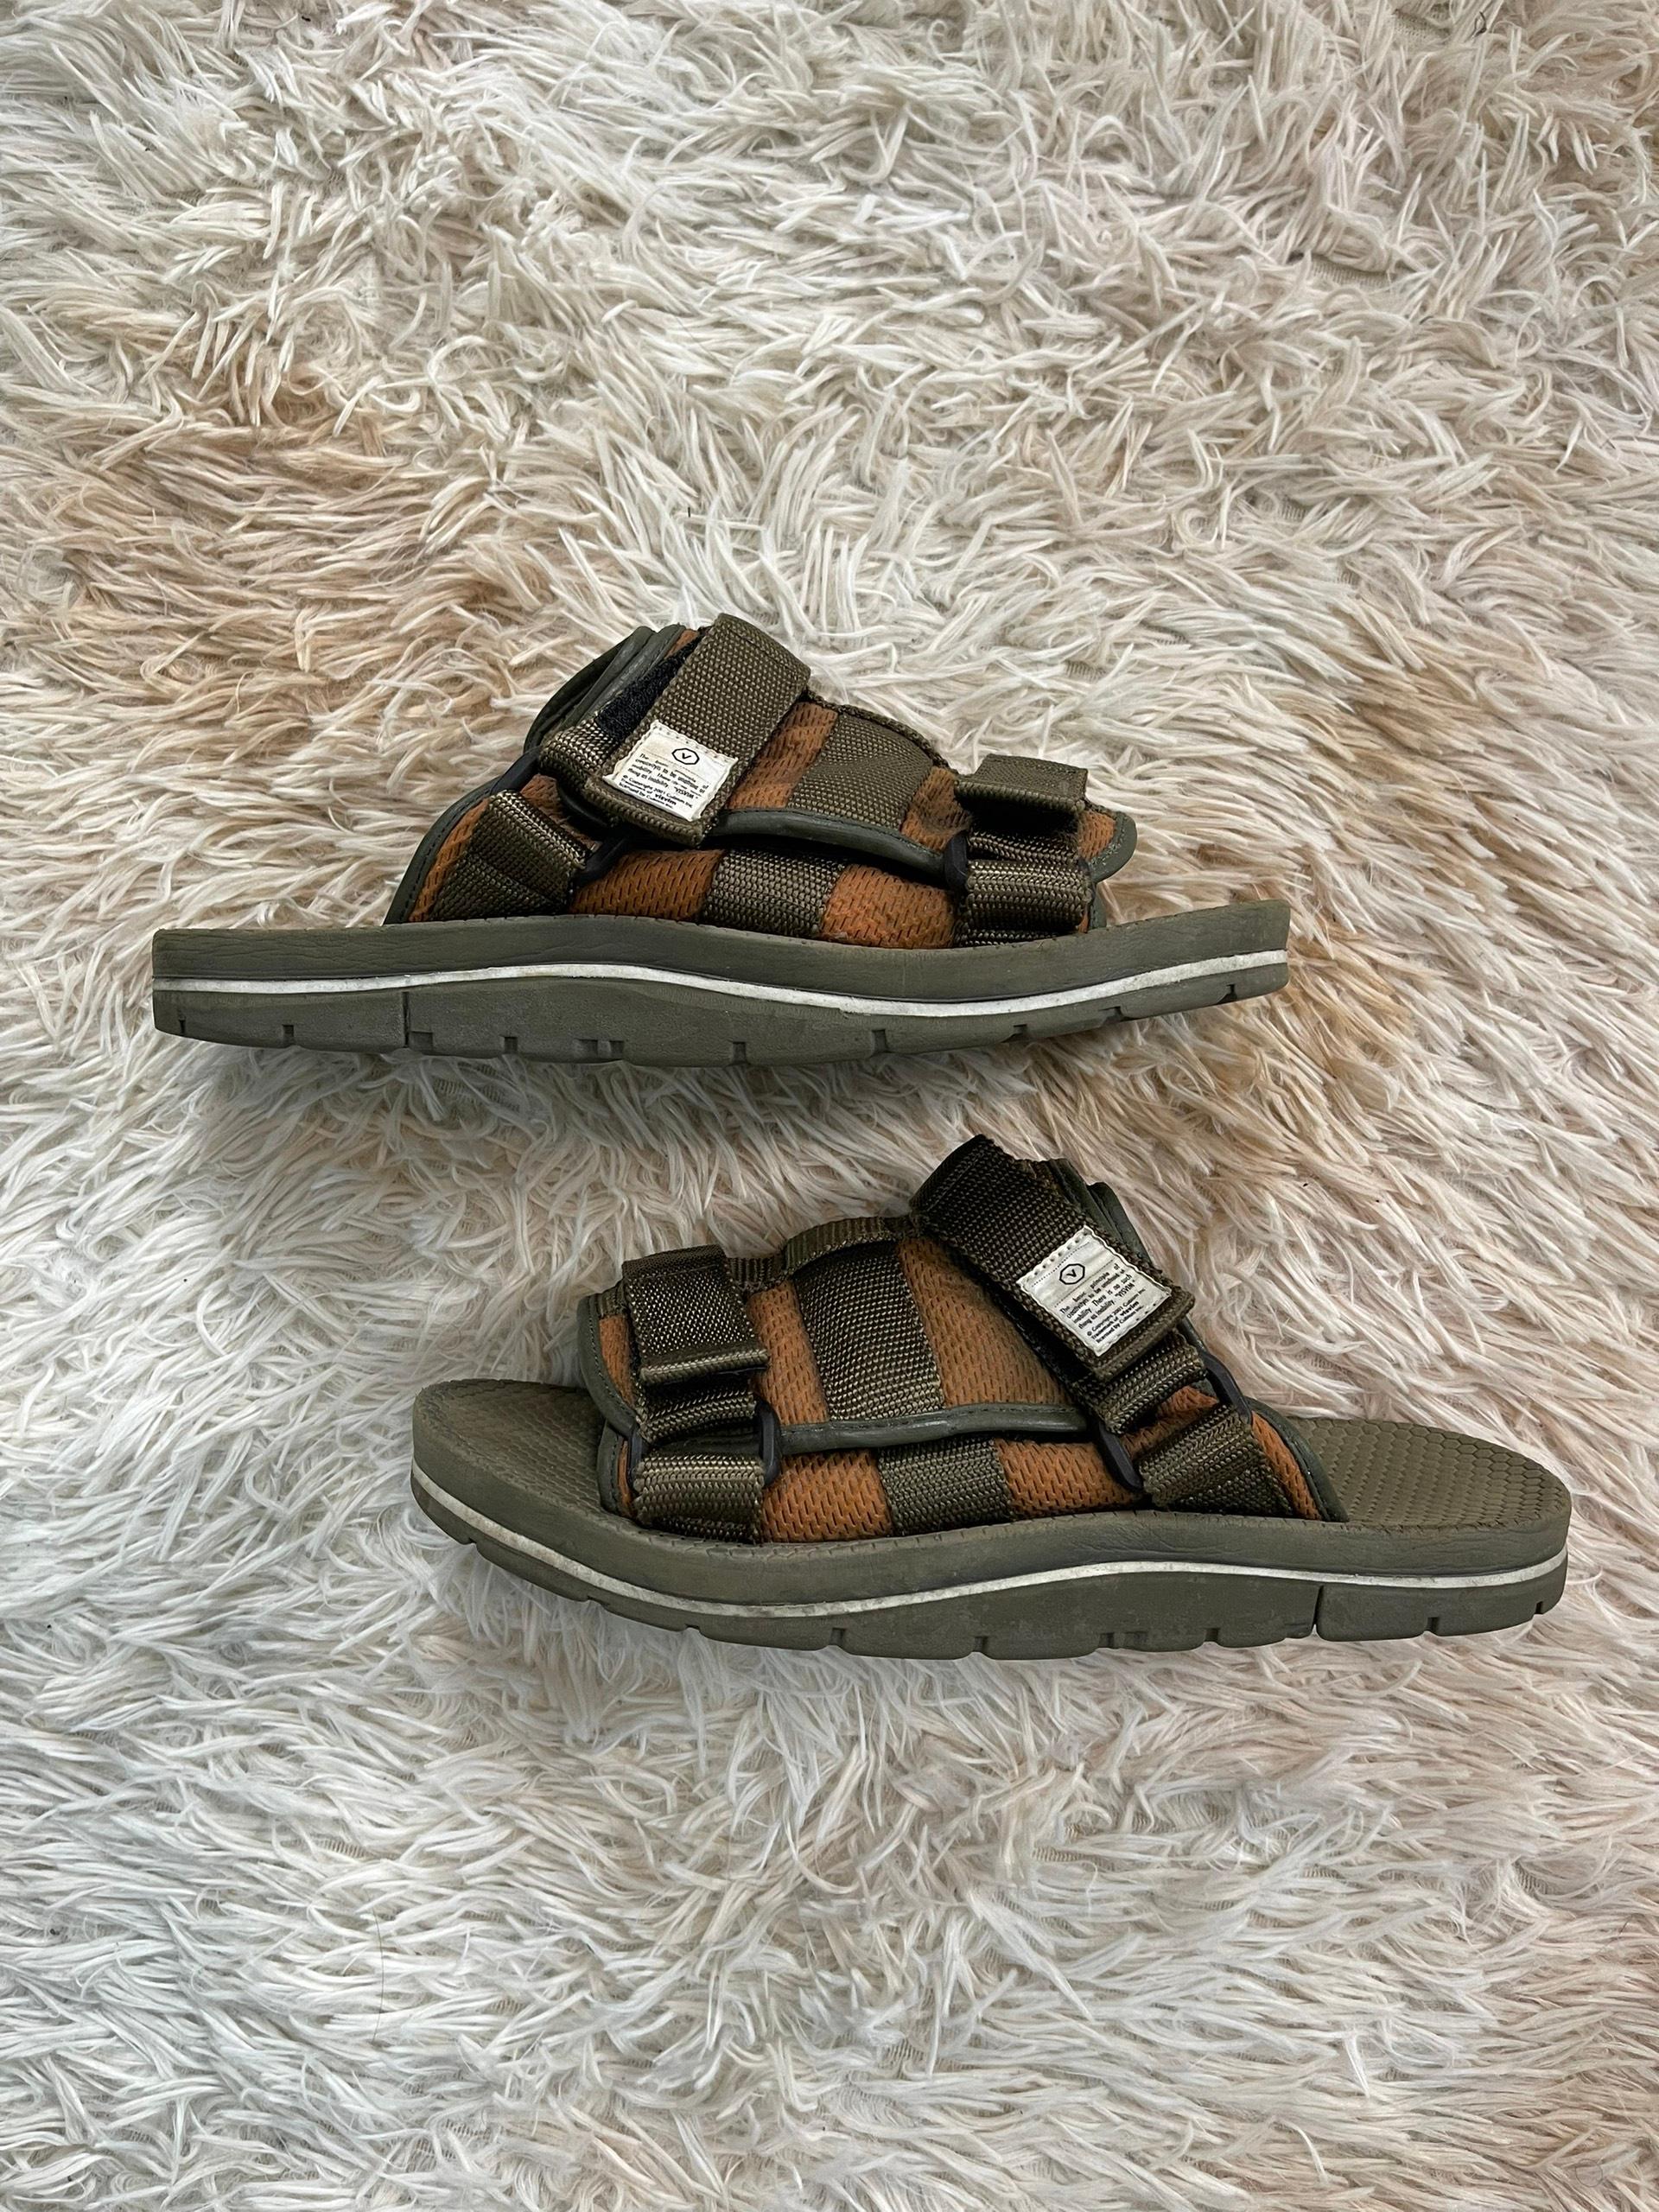 Visvim OG Christo Sandals Military Green For Sale 1